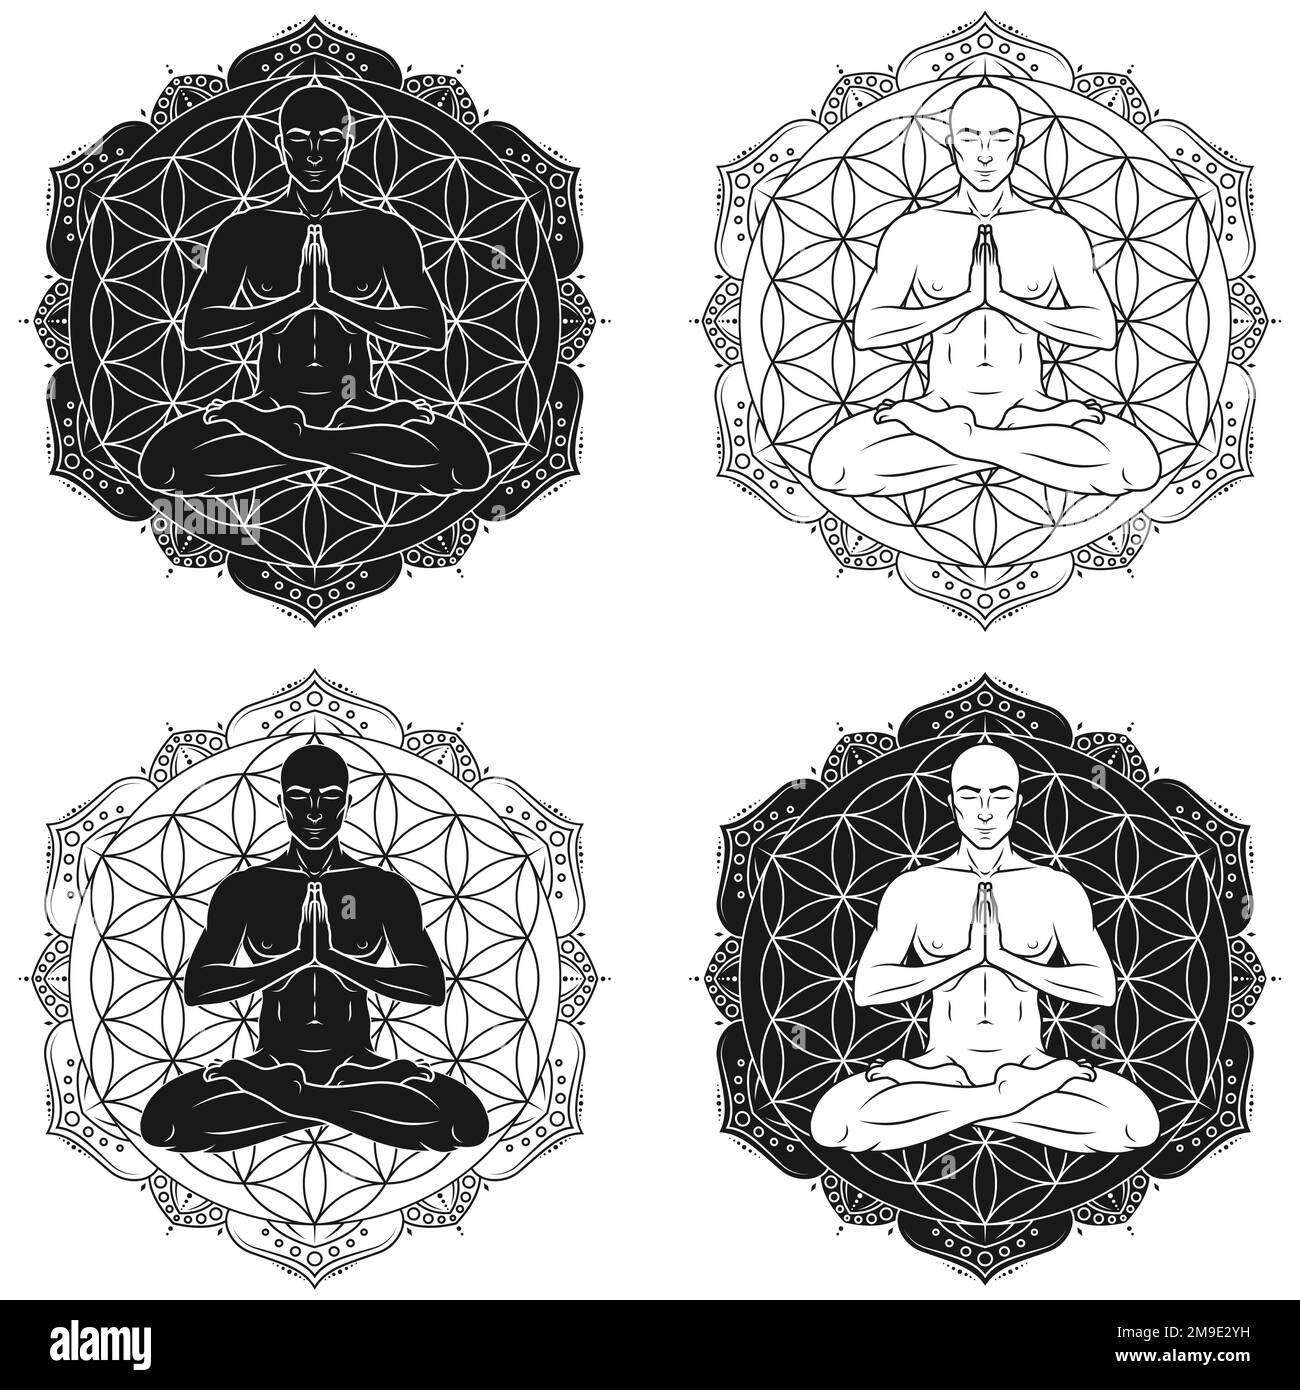 Vektordesign des Mannes meditiert in Lotusposition, Mann macht Yoga mit Blume des Lebens als Hintergrund Stock Vektor